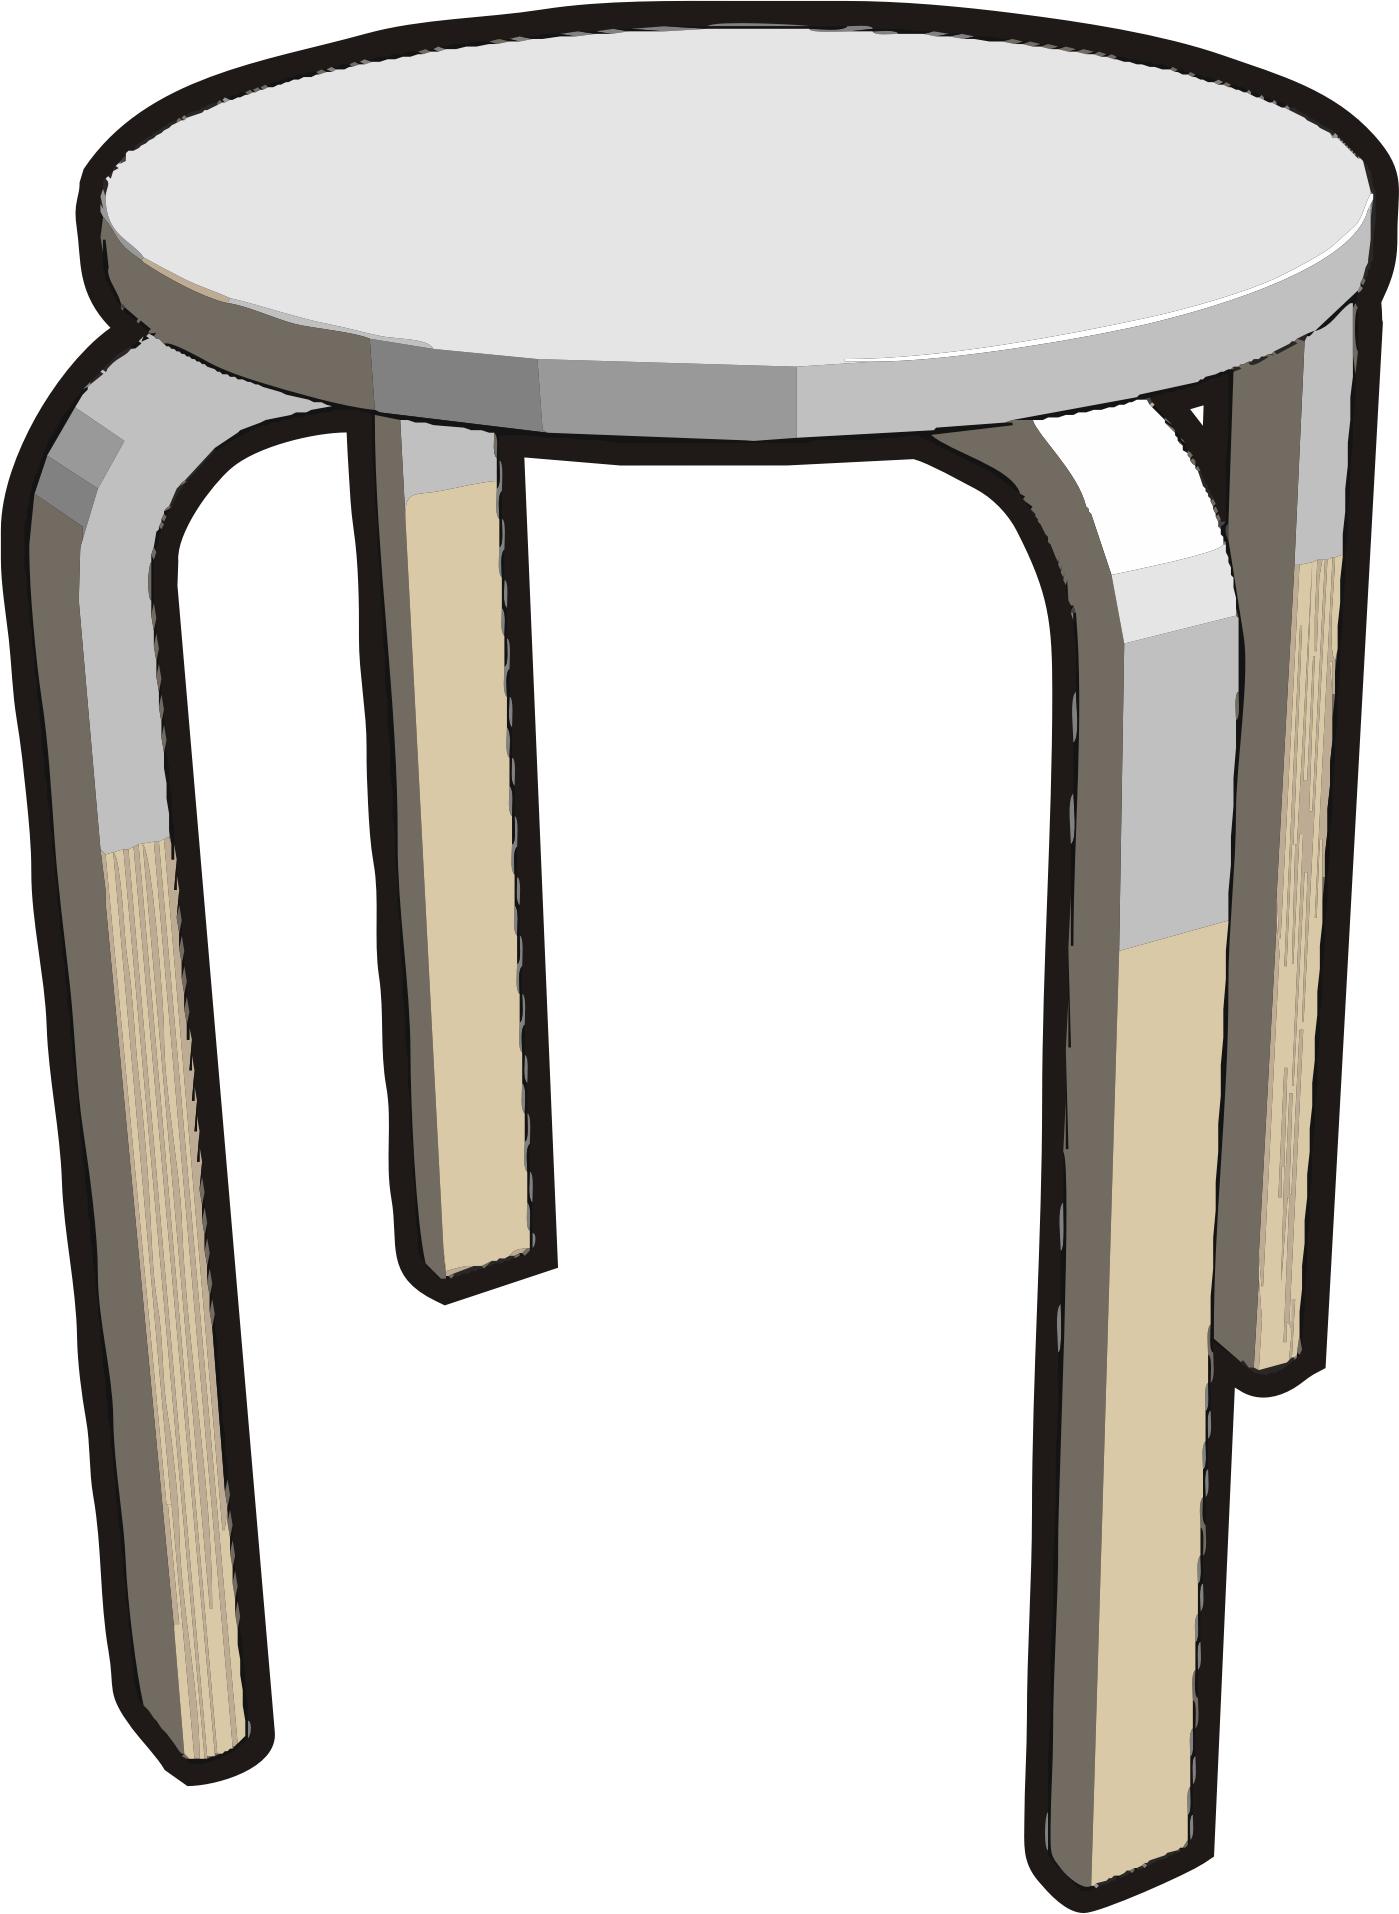 Ikea stuff - Frosta stool, half gray png